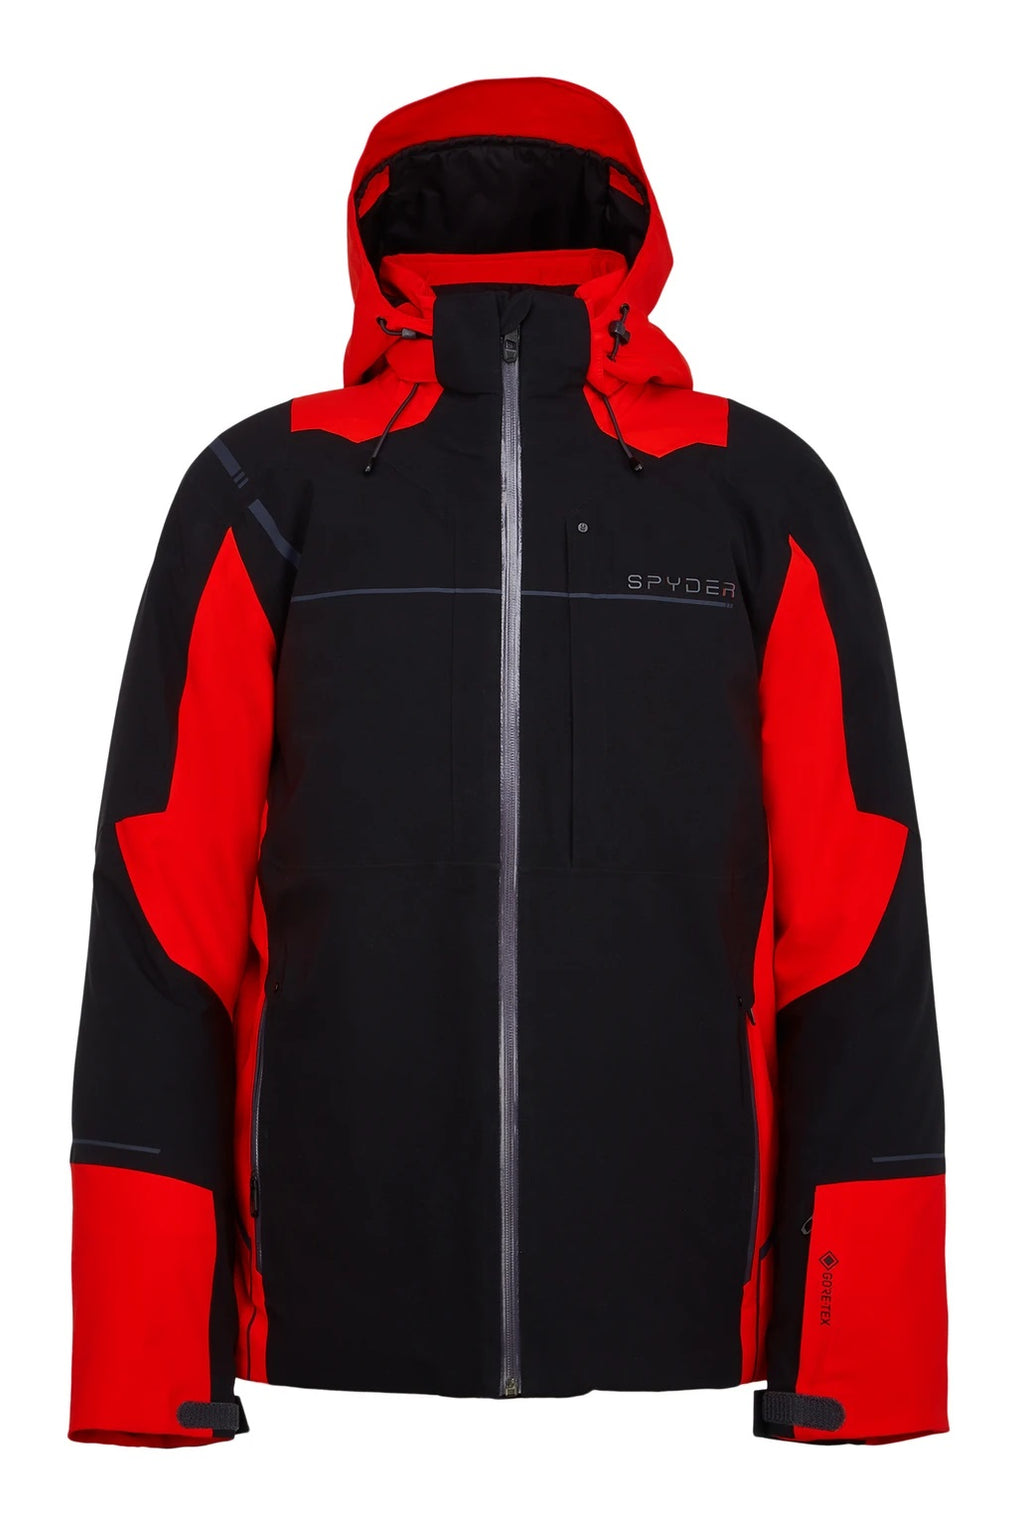 Spyder Titan Gore-Tex Ski Jacket - Men's Winter Skiing Coat | Park2Peak ...